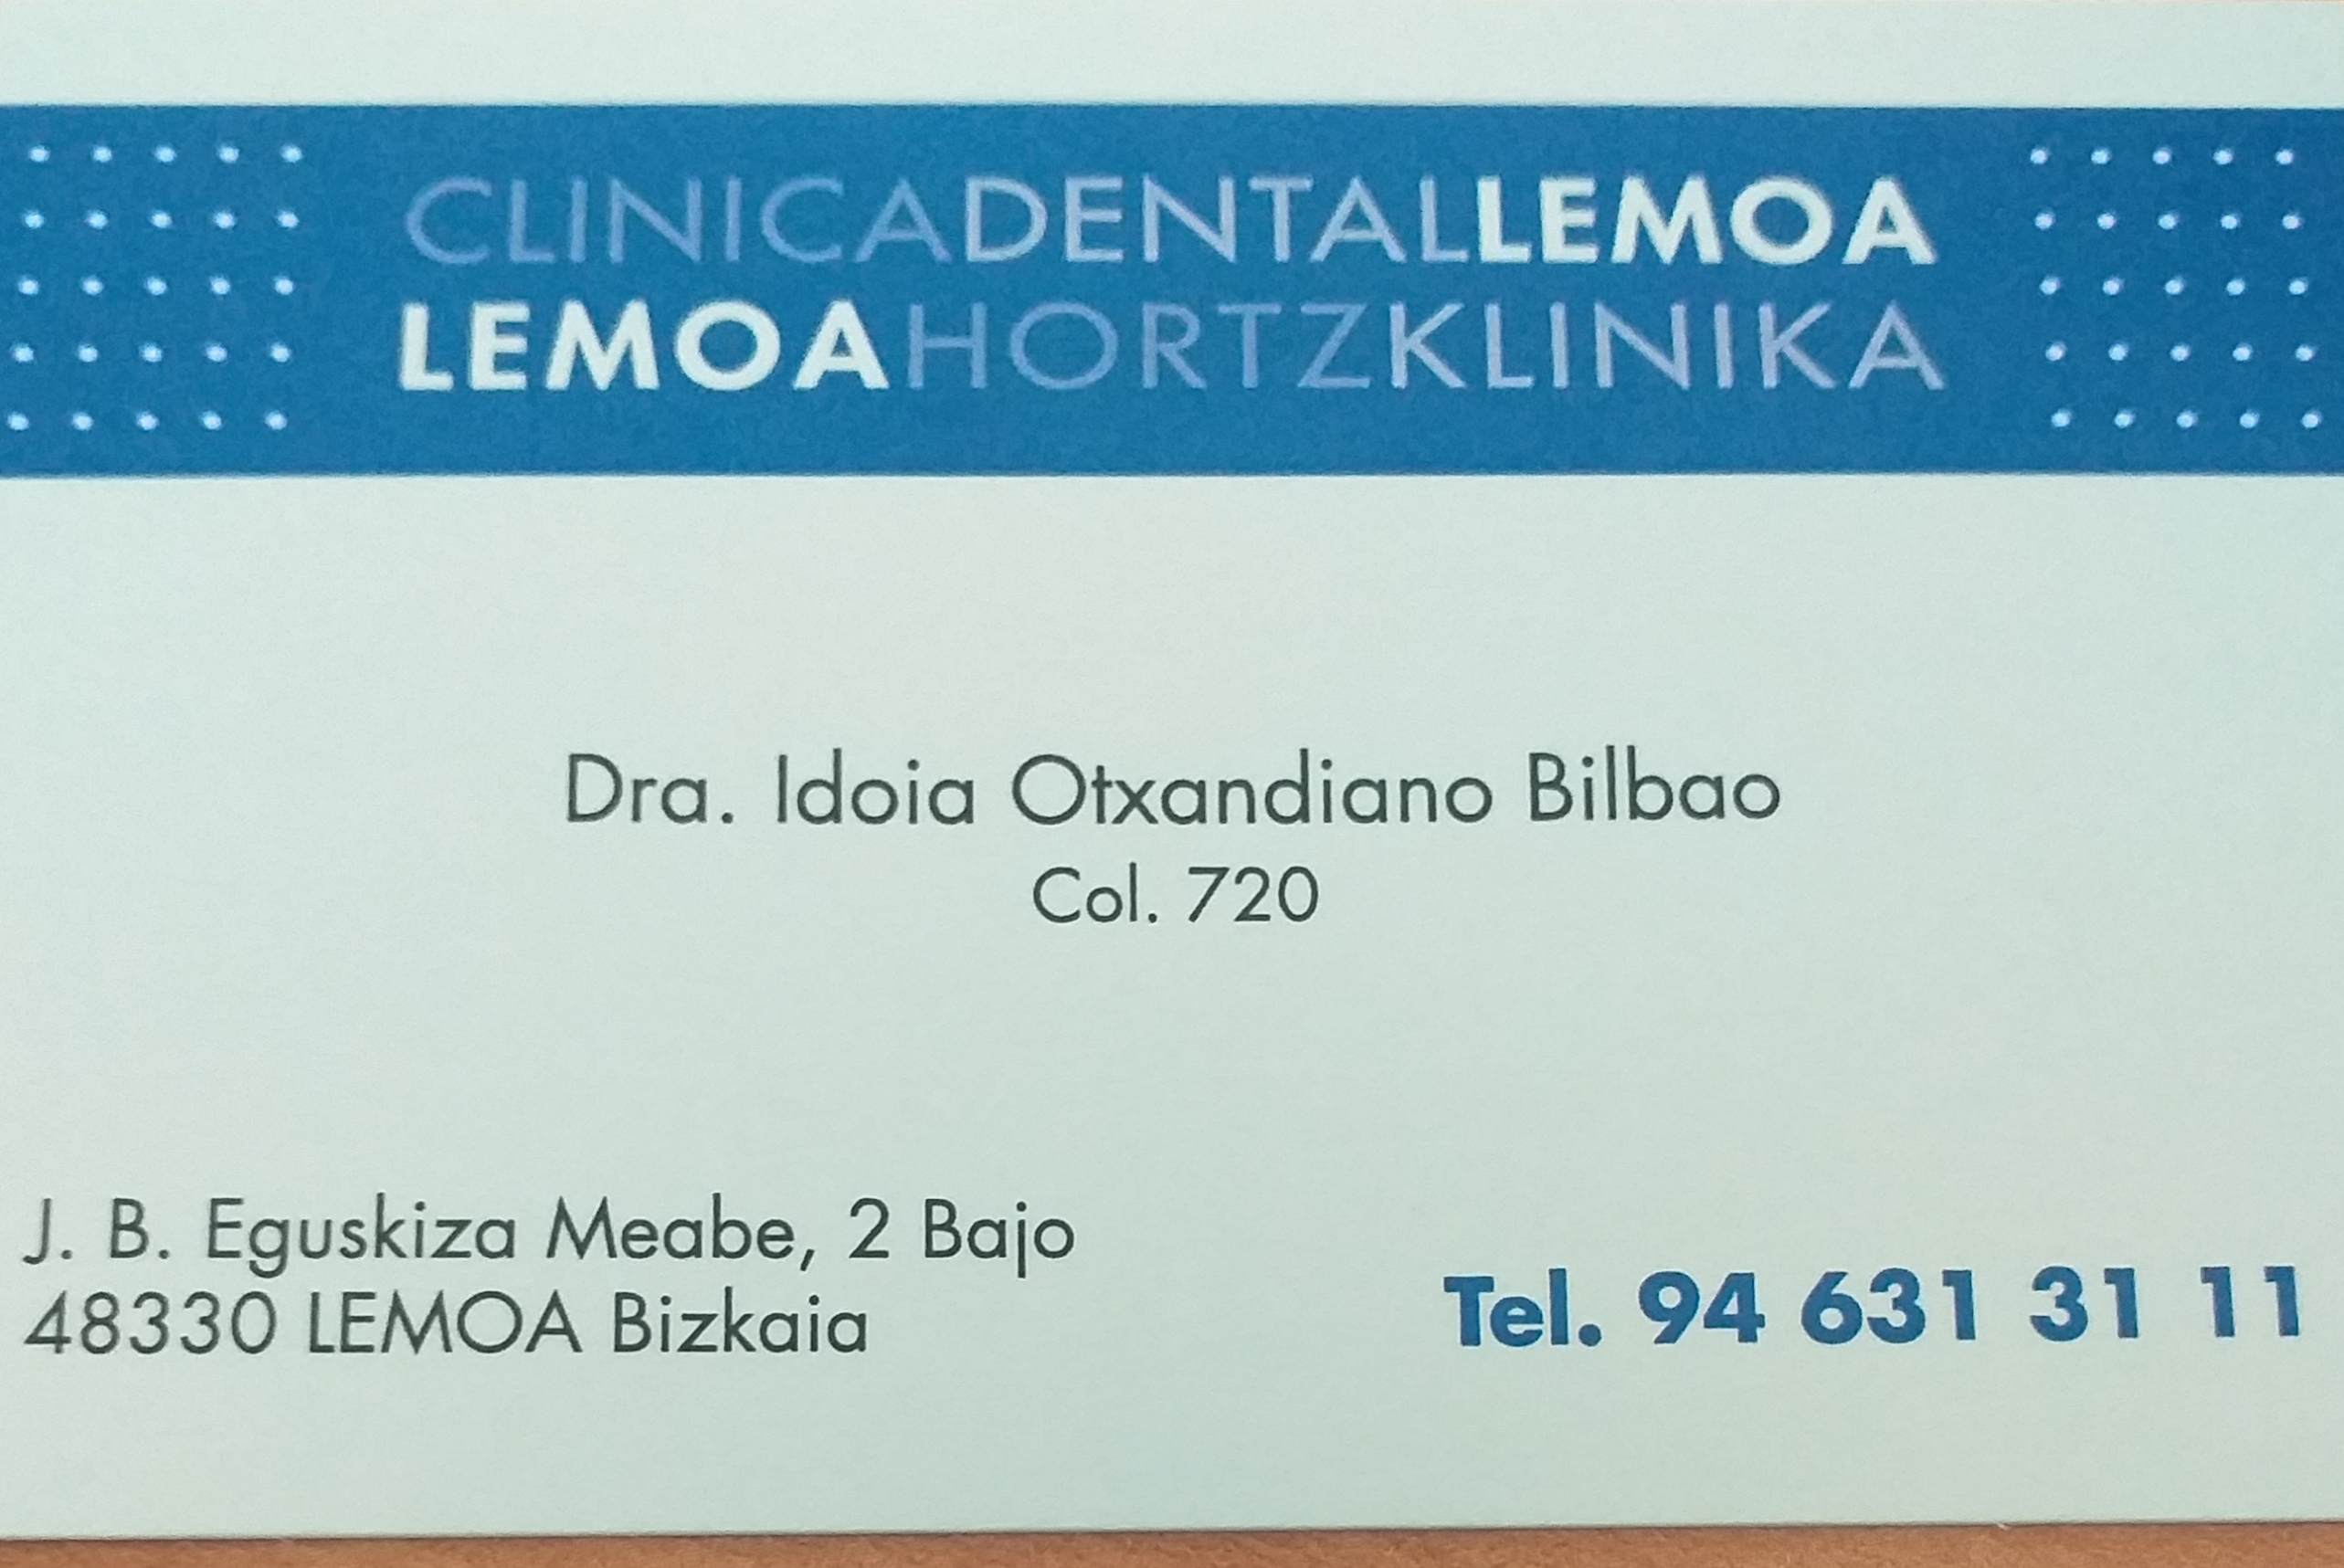 Images Clínica Dental Lemoa